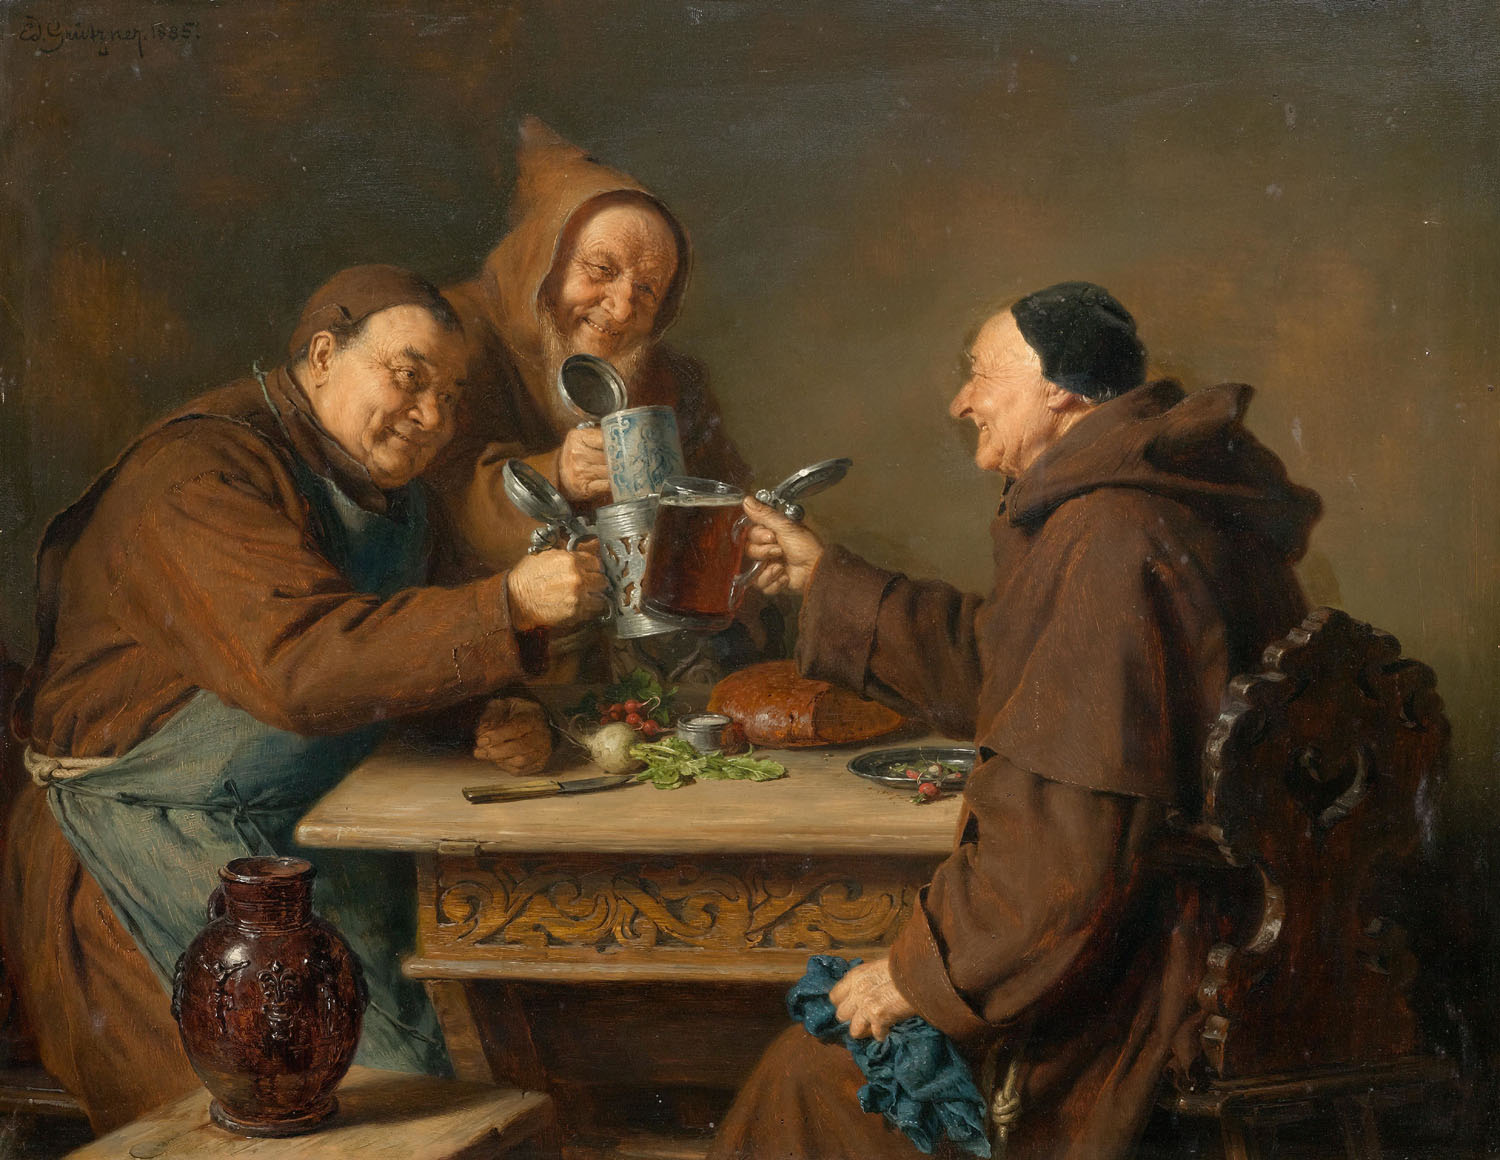 Gemälde von Eduard Grützner: Drei Mönche bei der Brotzeit